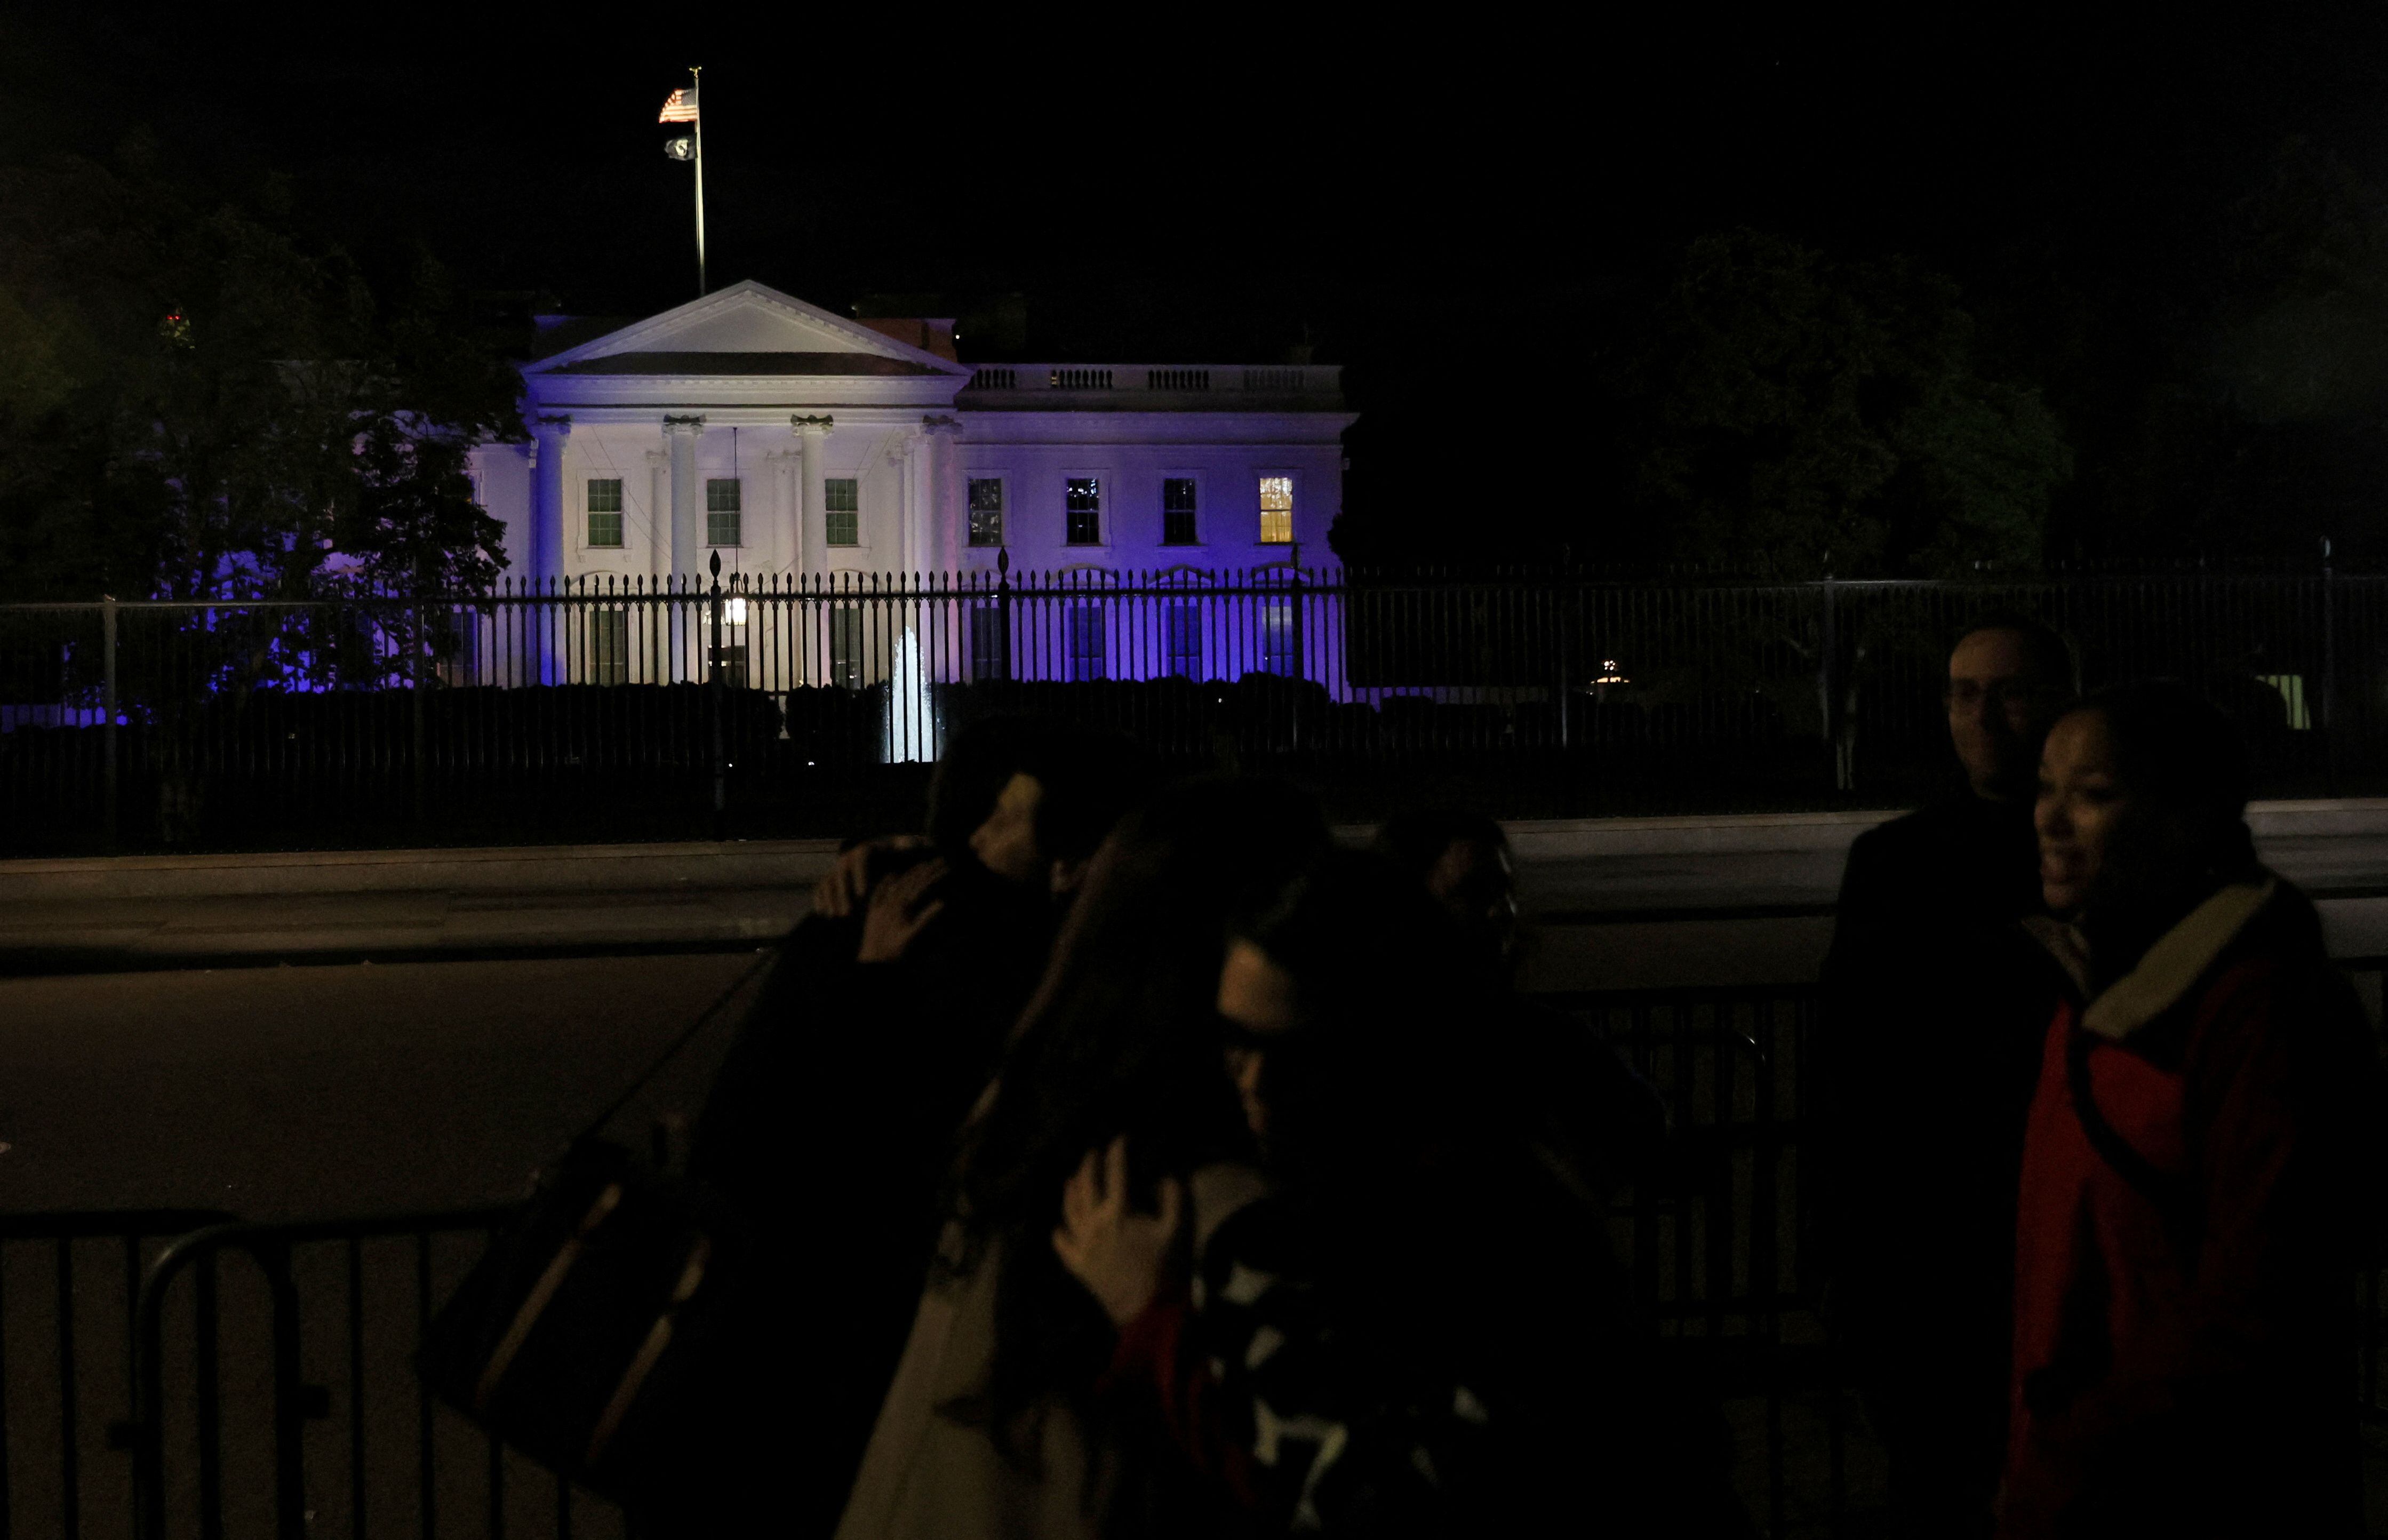 La fachada de la residencia presidencial estadounidense, en Washington, quedó iluminada de azul y blanco. (REUTERS/Leah Millis)